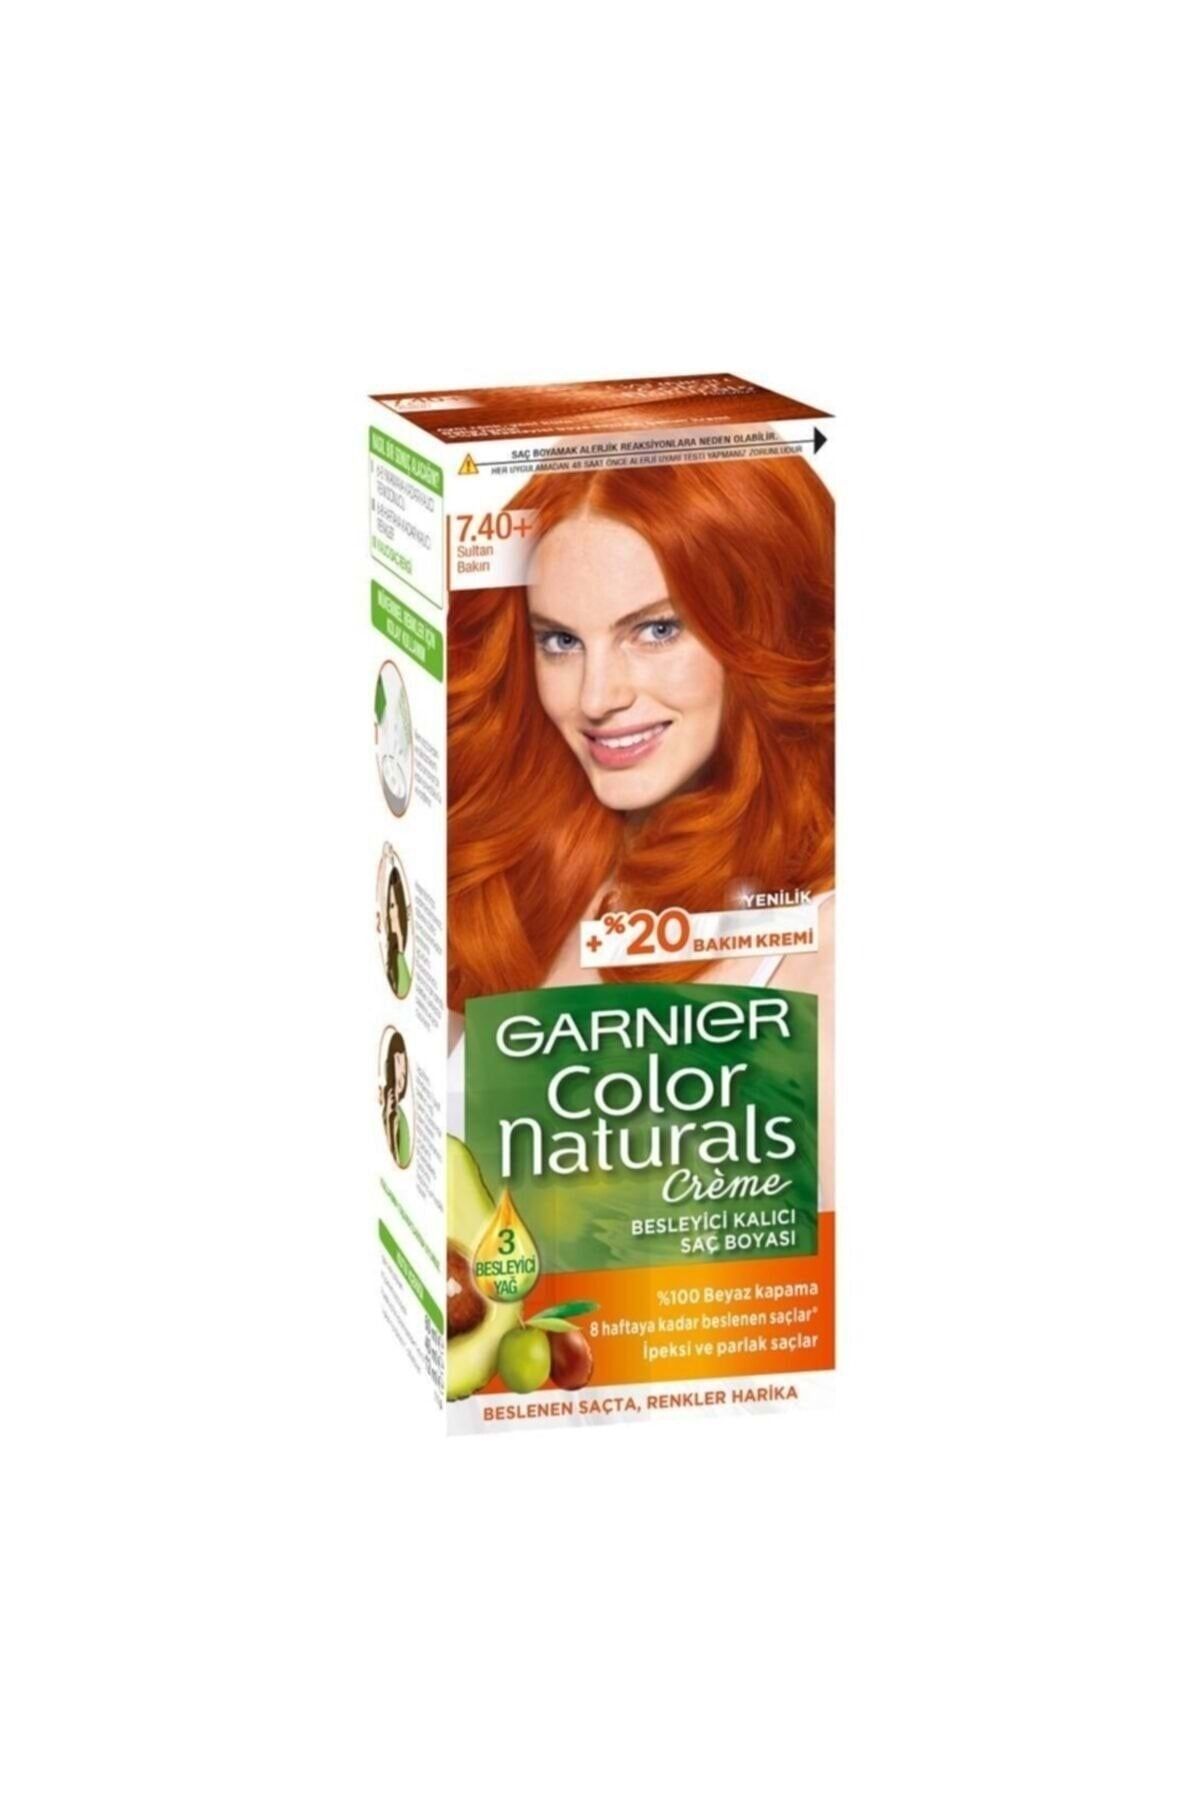 Garnier Garnıer Color Naturals Krem Saç Boyası 7.40+ Sultan Bakırı